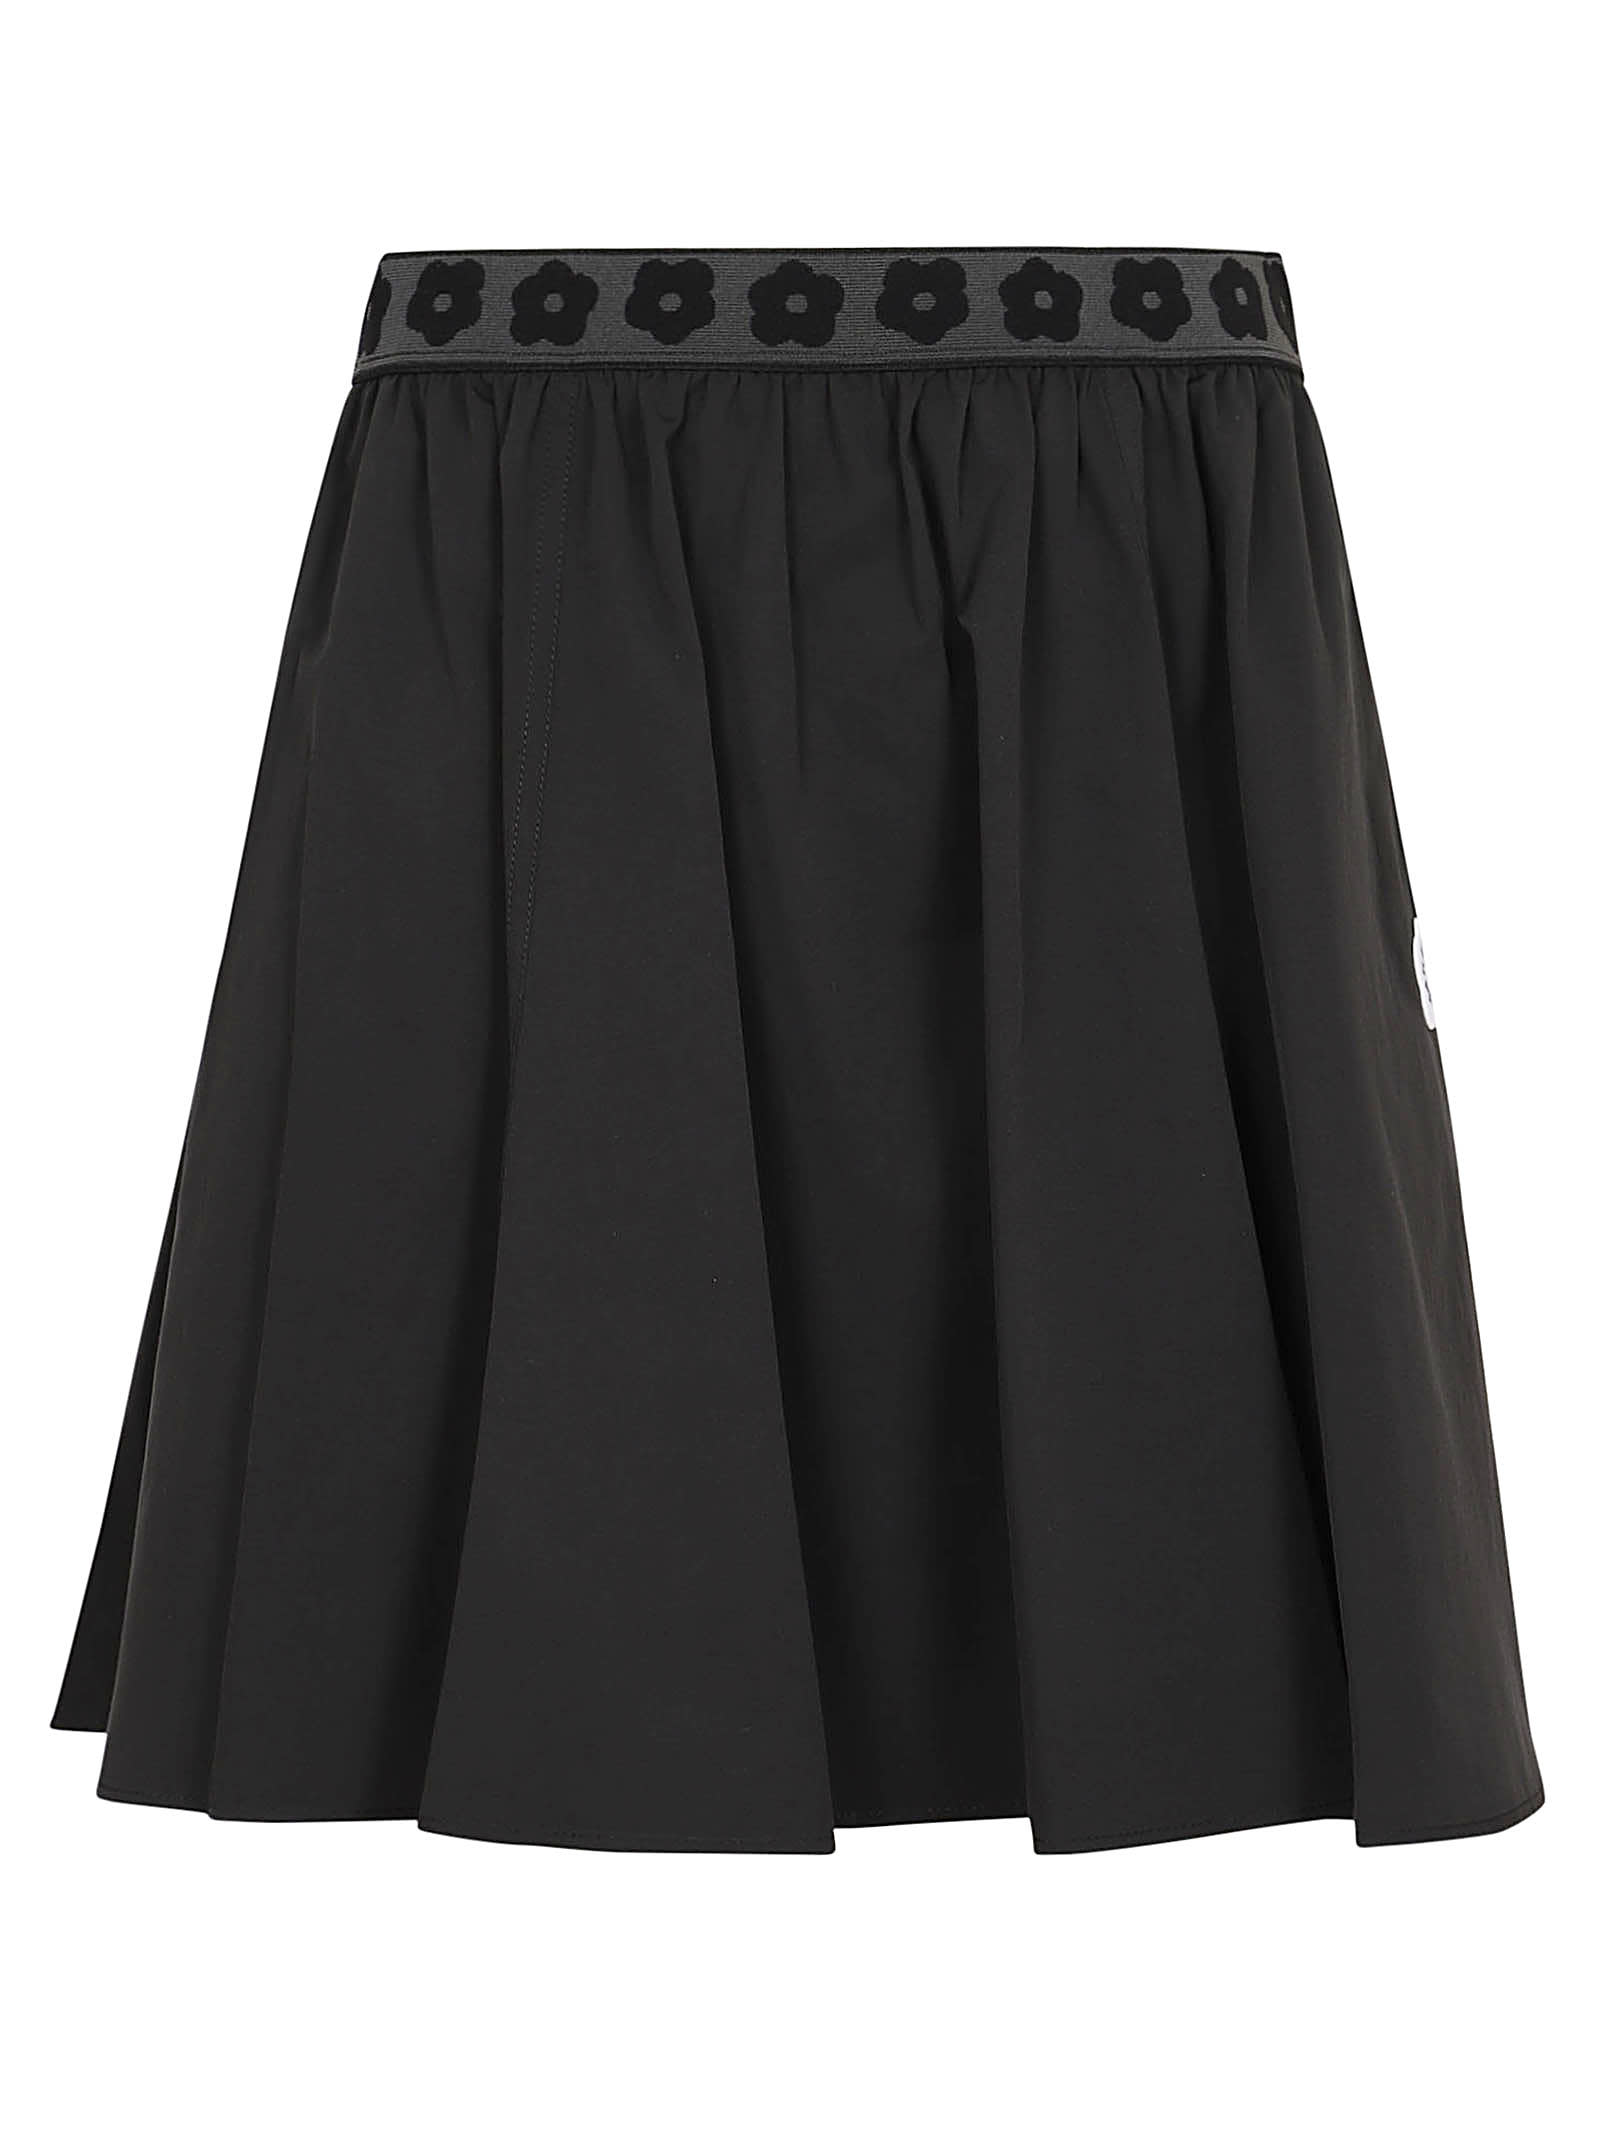 Boke 2.0 Short Skirt